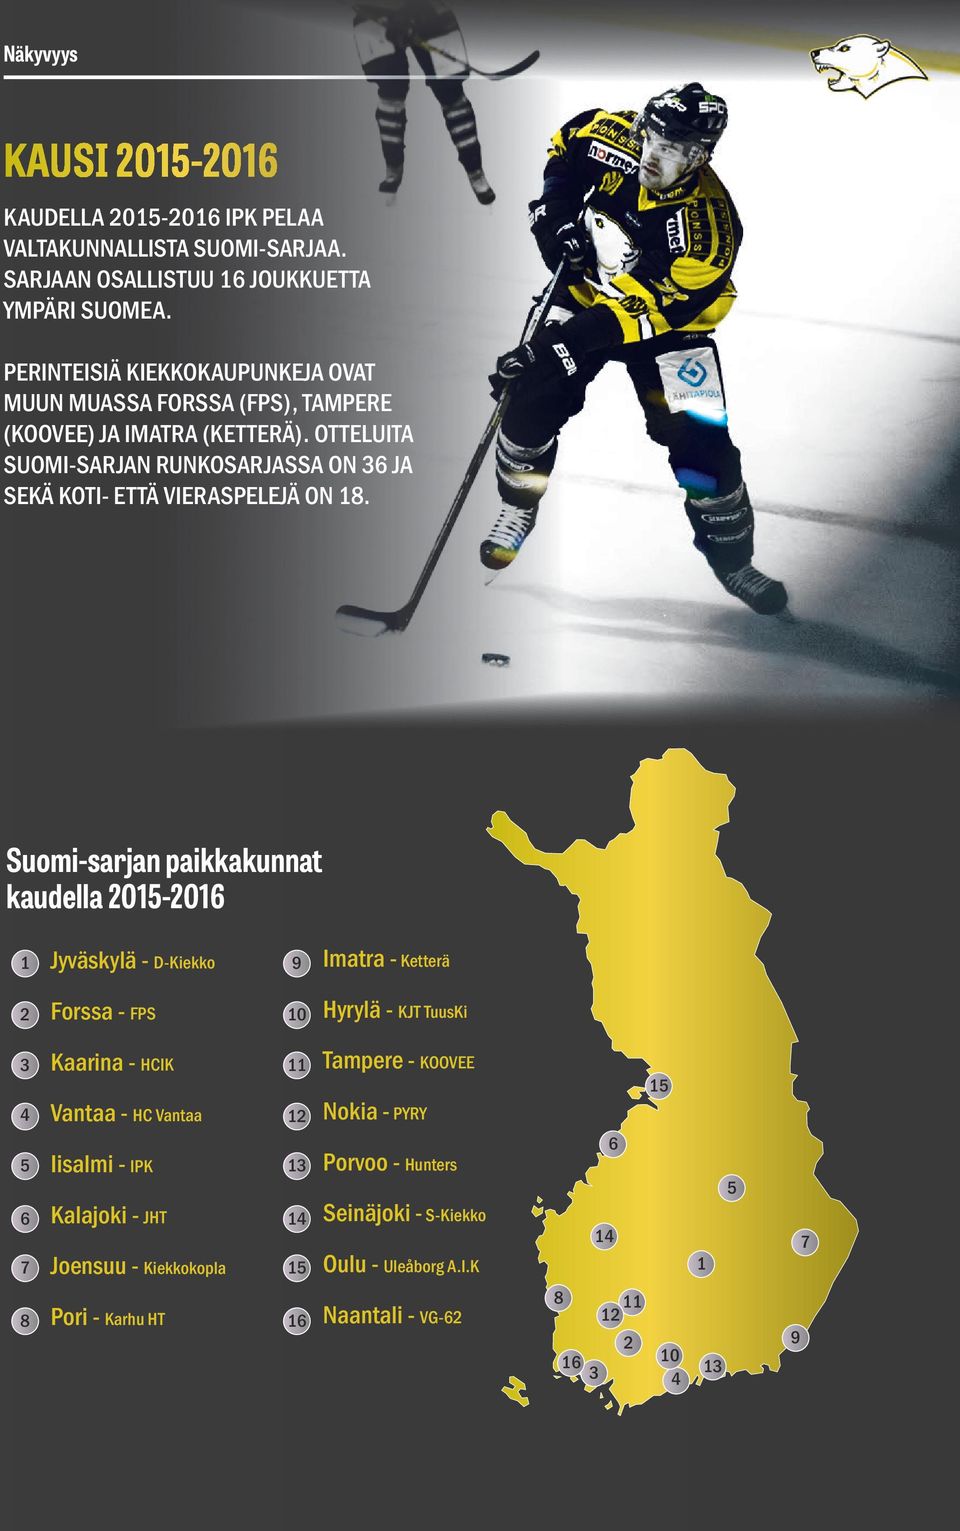 Suomi-sarjan paikkakunnat kaudella 2015-2016 1 Jyväskylä - D-Kiekko 9 Imatra - Ketterä 2 Forssa - FPS 10 Hyrylä - KJT TuusKi 3 4 5 6 7 8 Kaarina - HCIK Vantaa - HC Vantaa Iisalmi